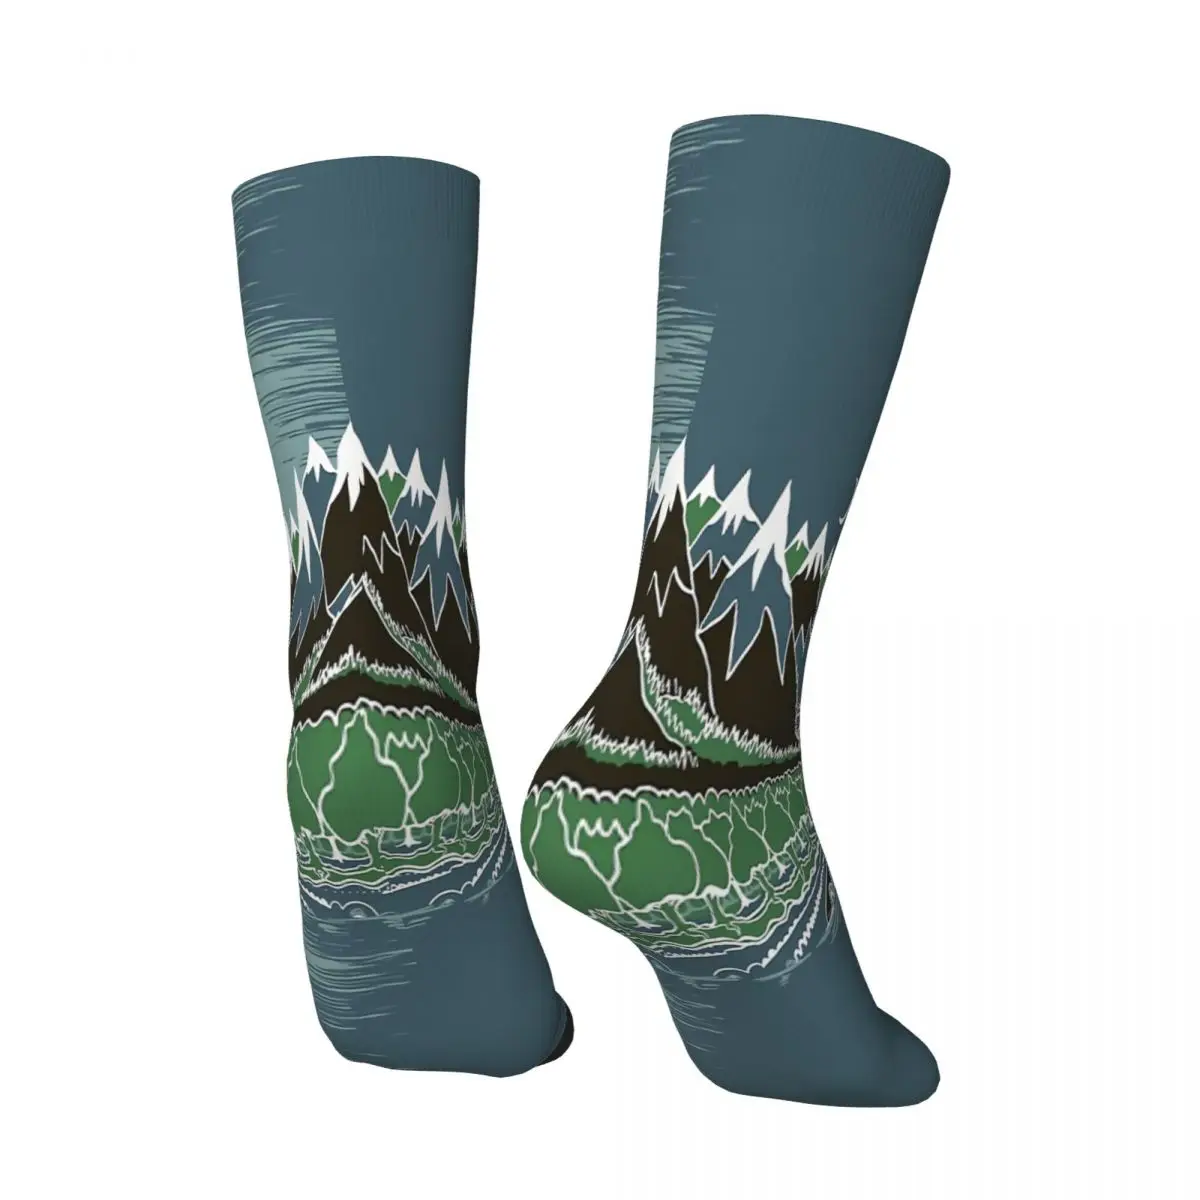 Në Mesnatë Pyjeve Malore Rrugën Në Stilin E J R R Tolkien Goditje Çorape Burra Gra Poliestër Stockings Përshtatshëm Sweetshirt . ' - ' . 2